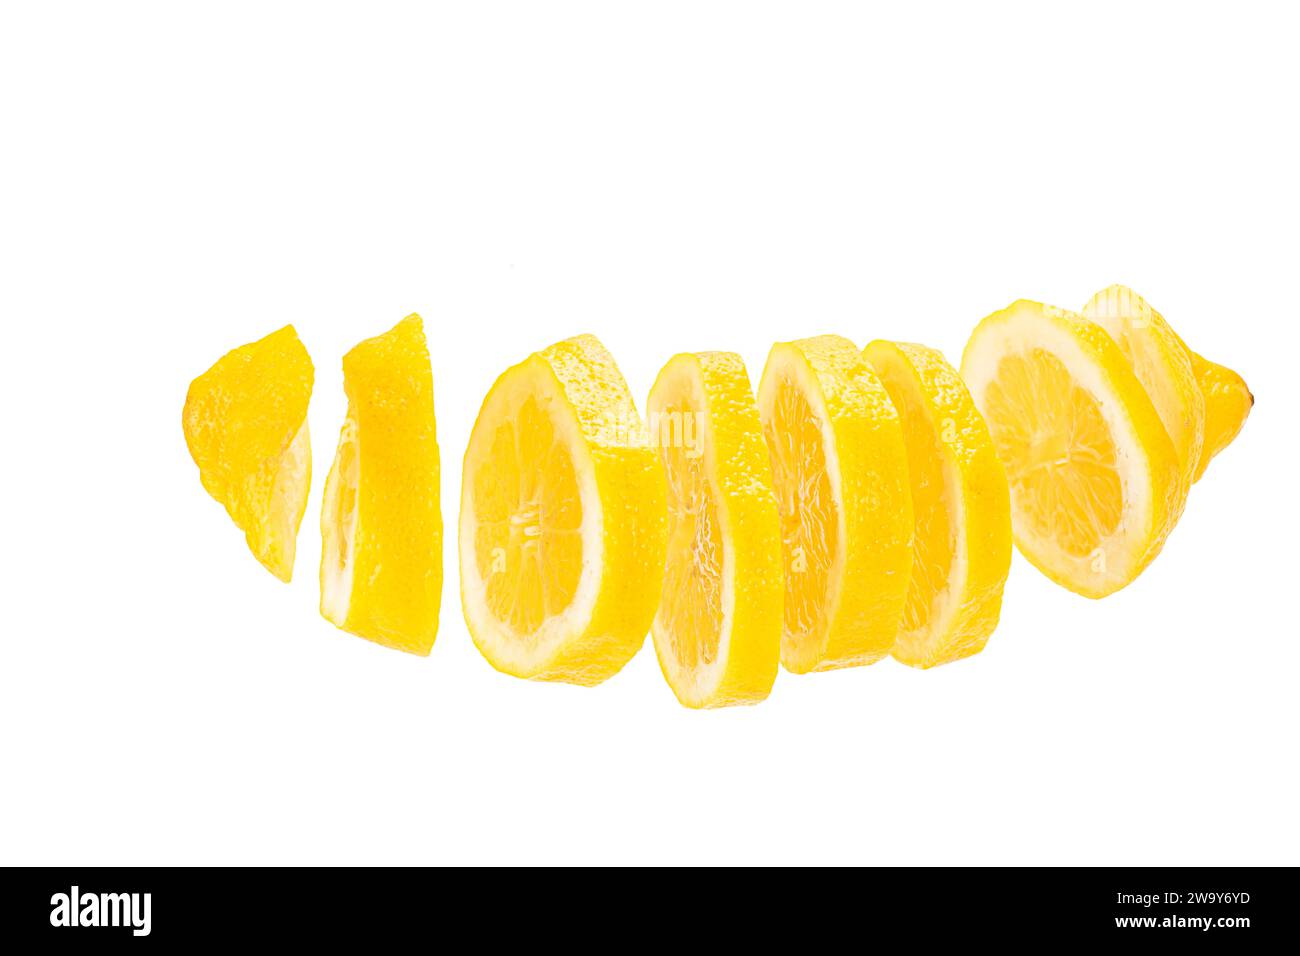 Zitrone in Scheiben geschnitten und frei schwebend vor weißem hintergrund. Un citron coupé en tranches et placé en rangée devant un fond blanc Banque D'Images